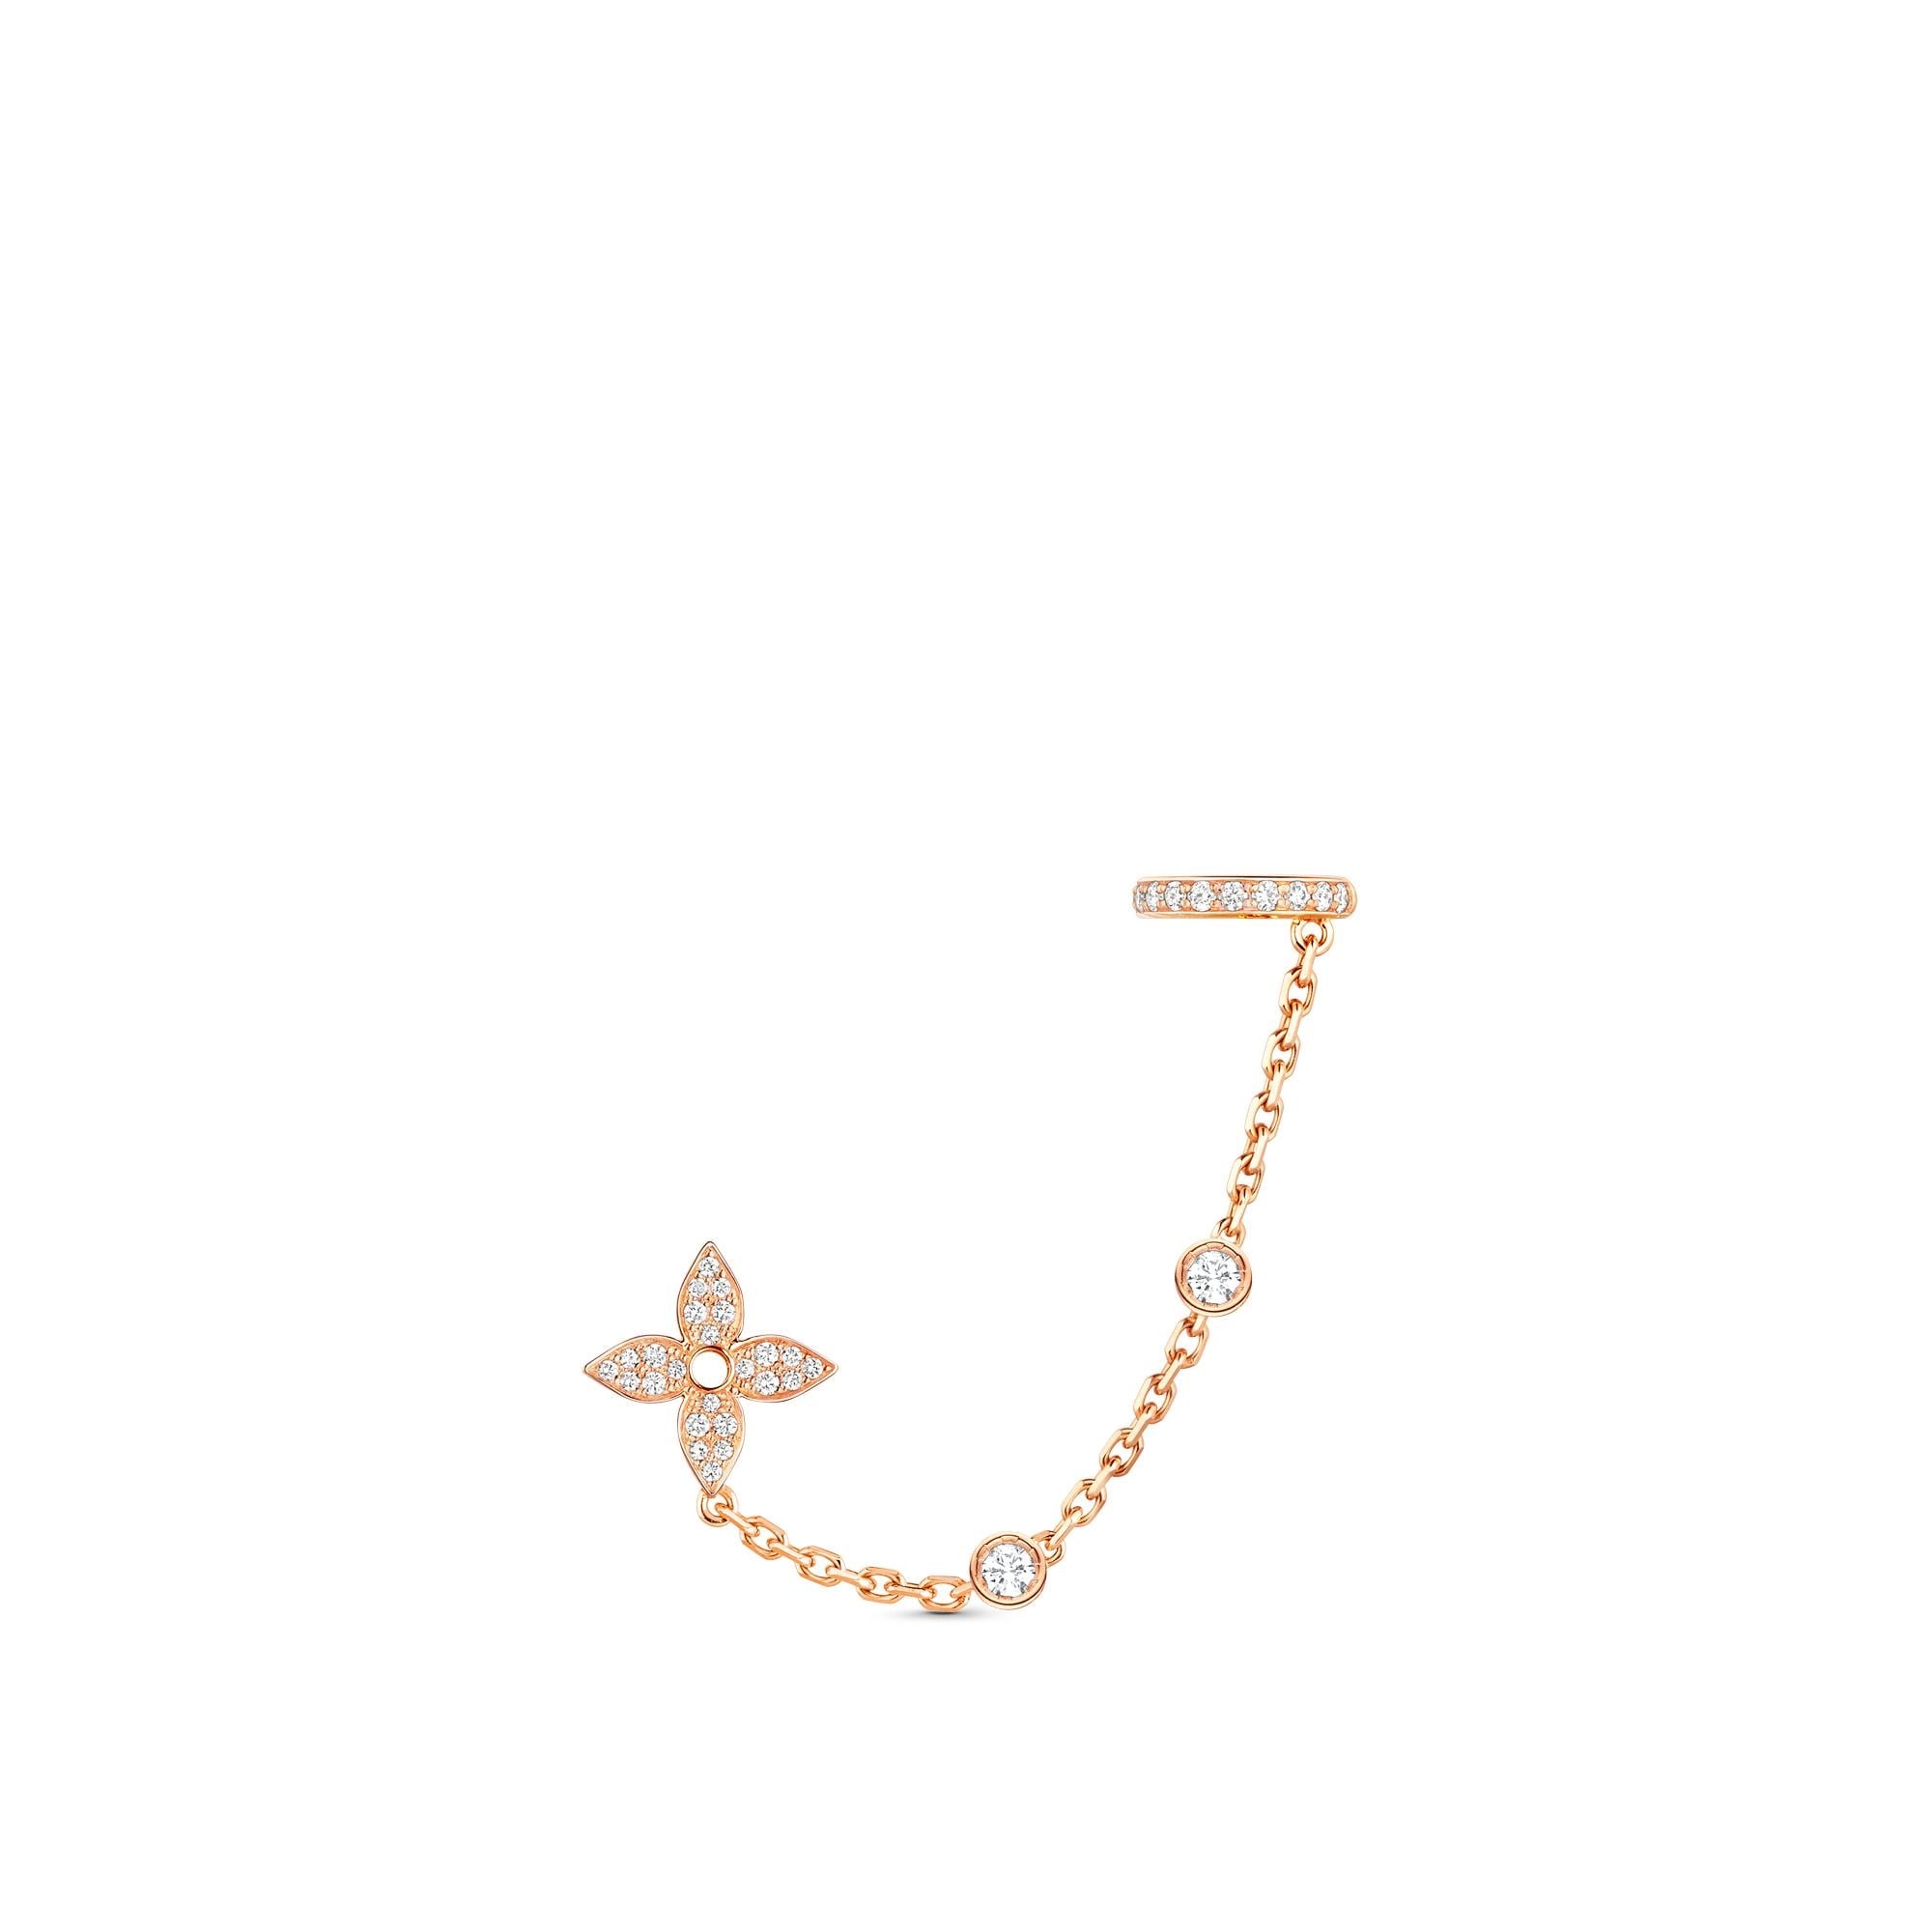 Louis Vuitton LV Volt Upside Down Bracelet, Pink Gold. Size NSA